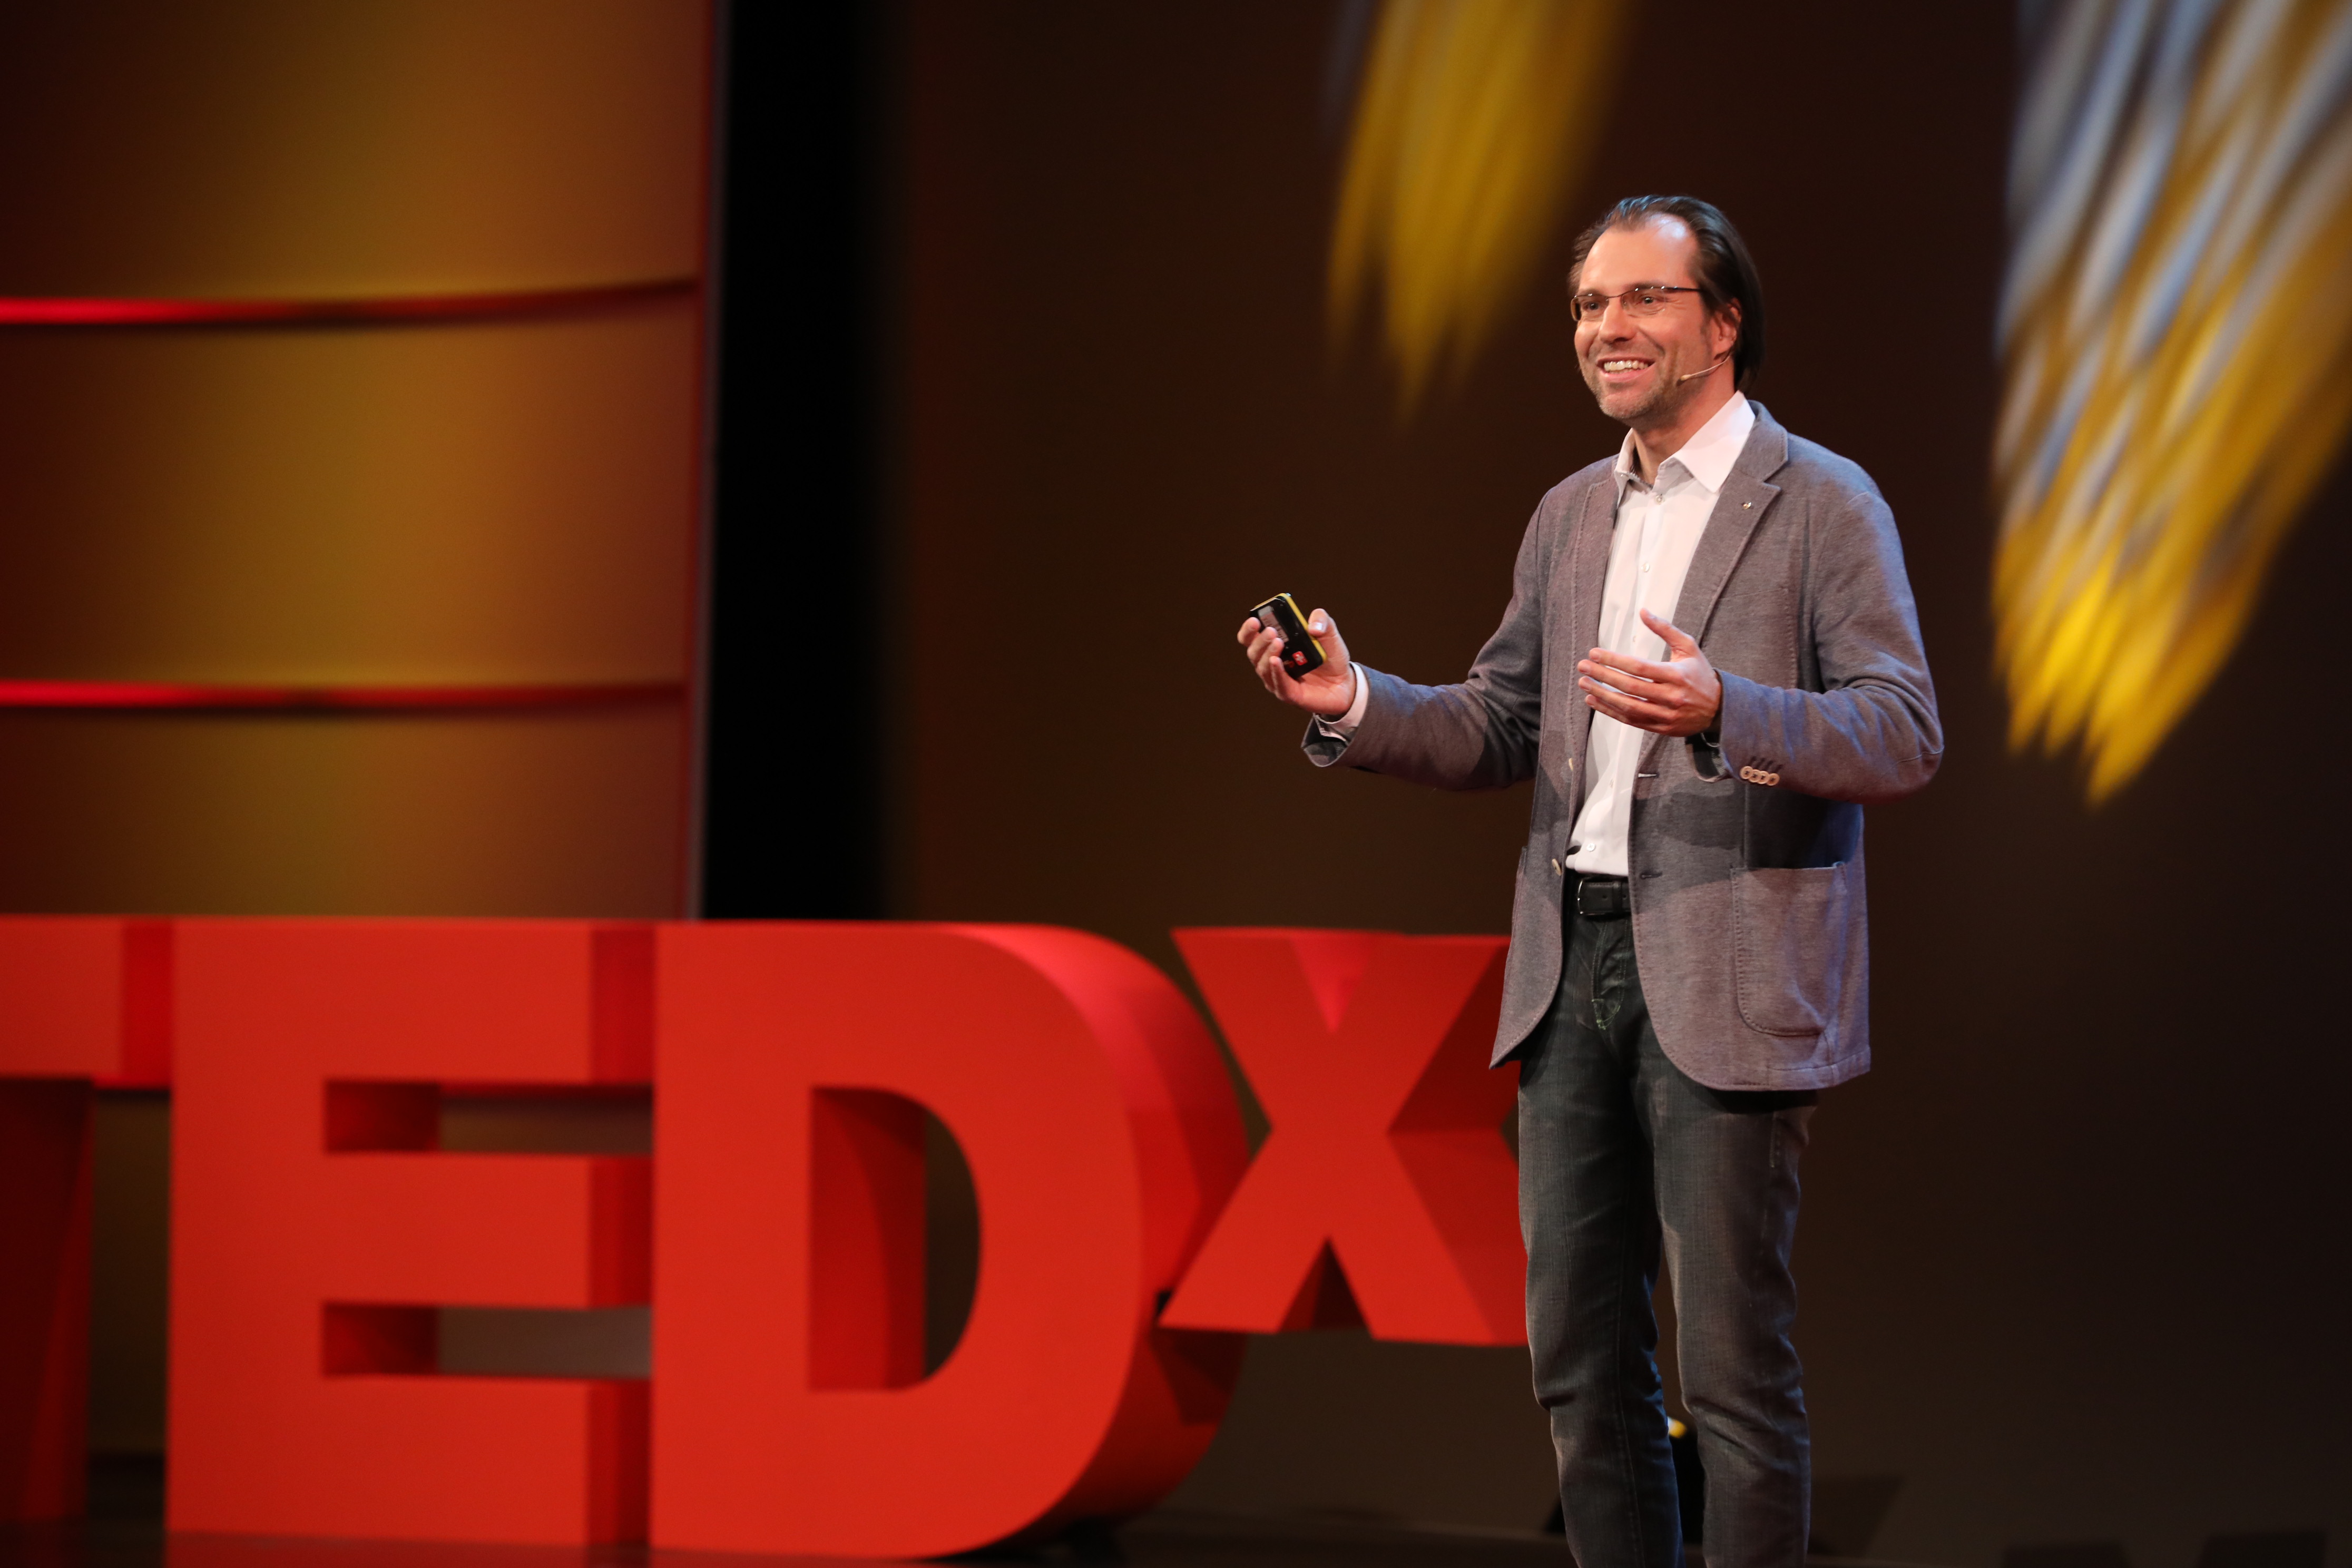 Foto: Auftritt von Alexander Wagner bei TEDxZurich 2016